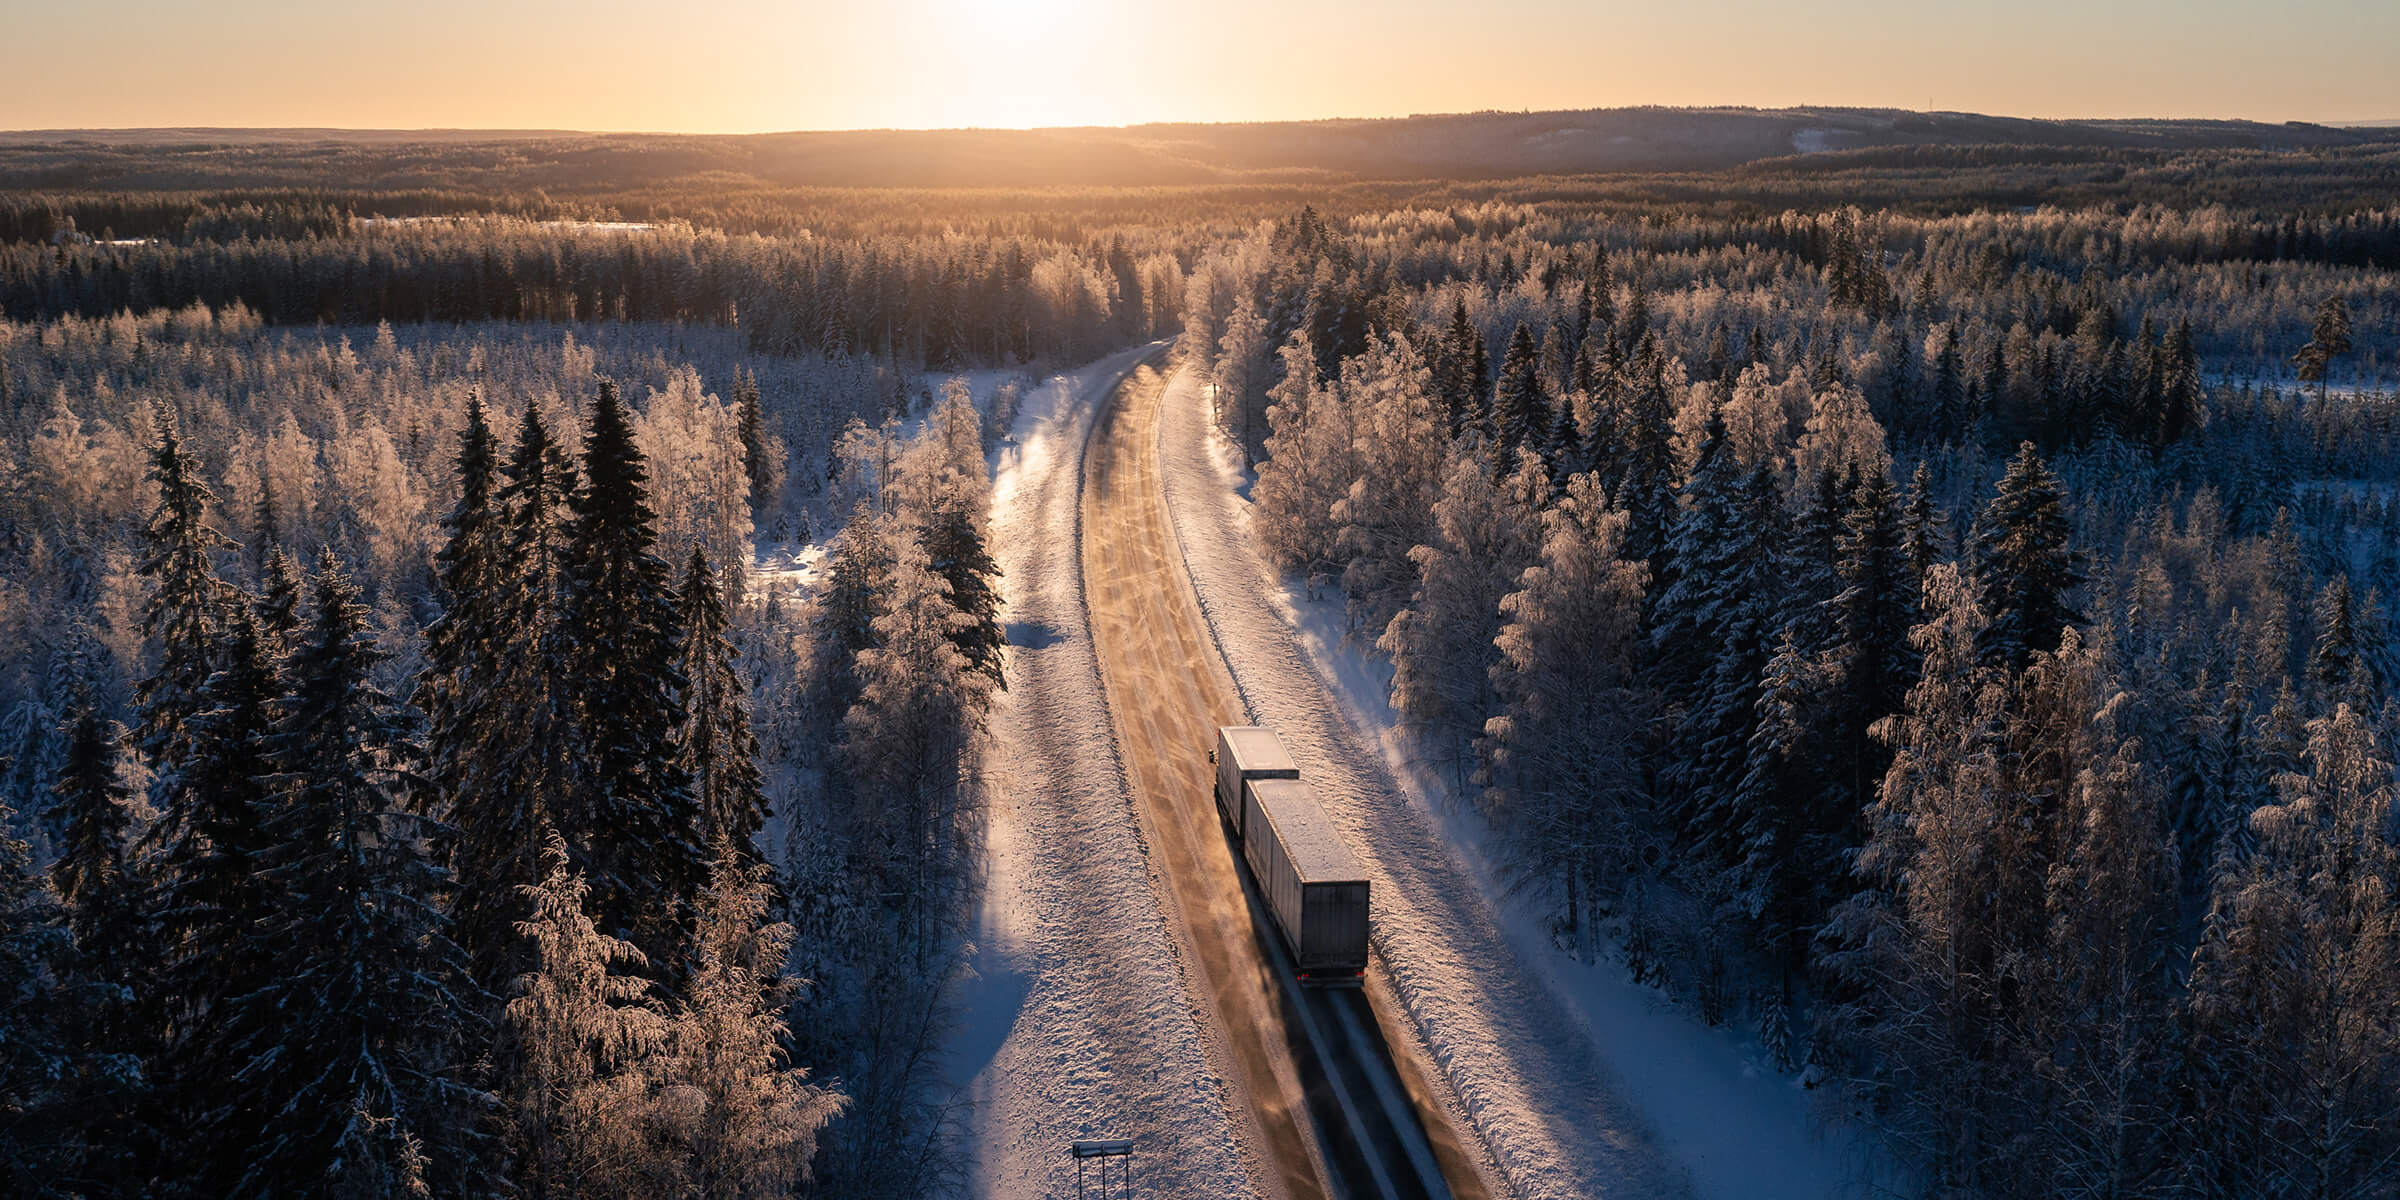 Rekka kulkee Suomen talvisella tiellä auringon noustessa.